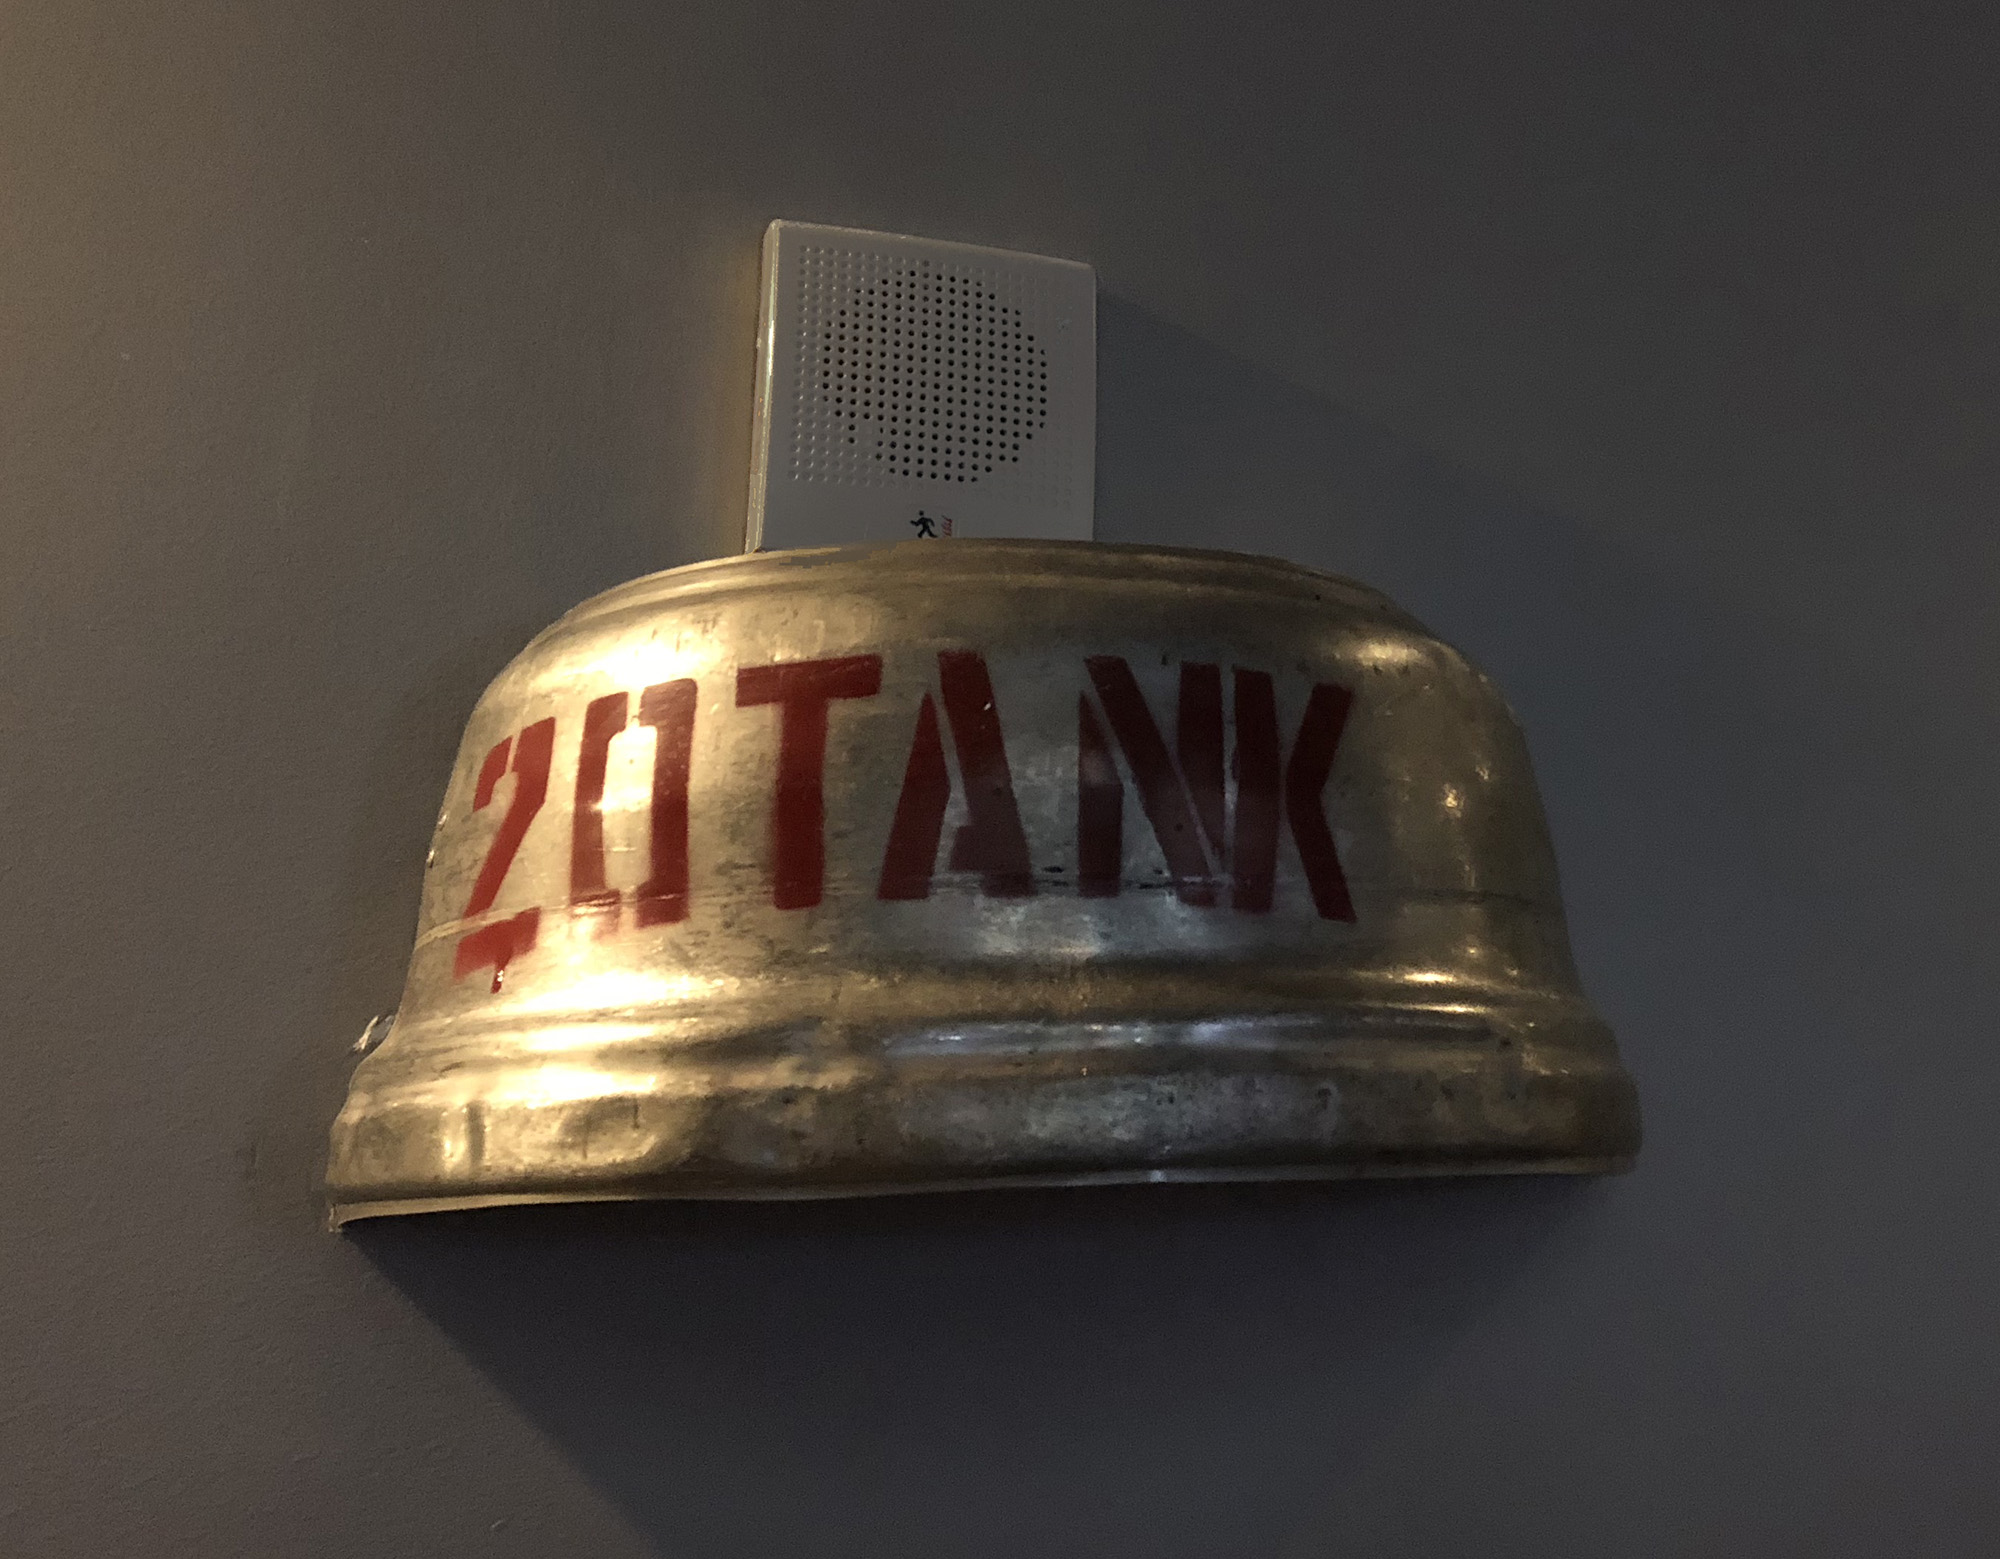 Light fixture made from a Twenty Tank keg